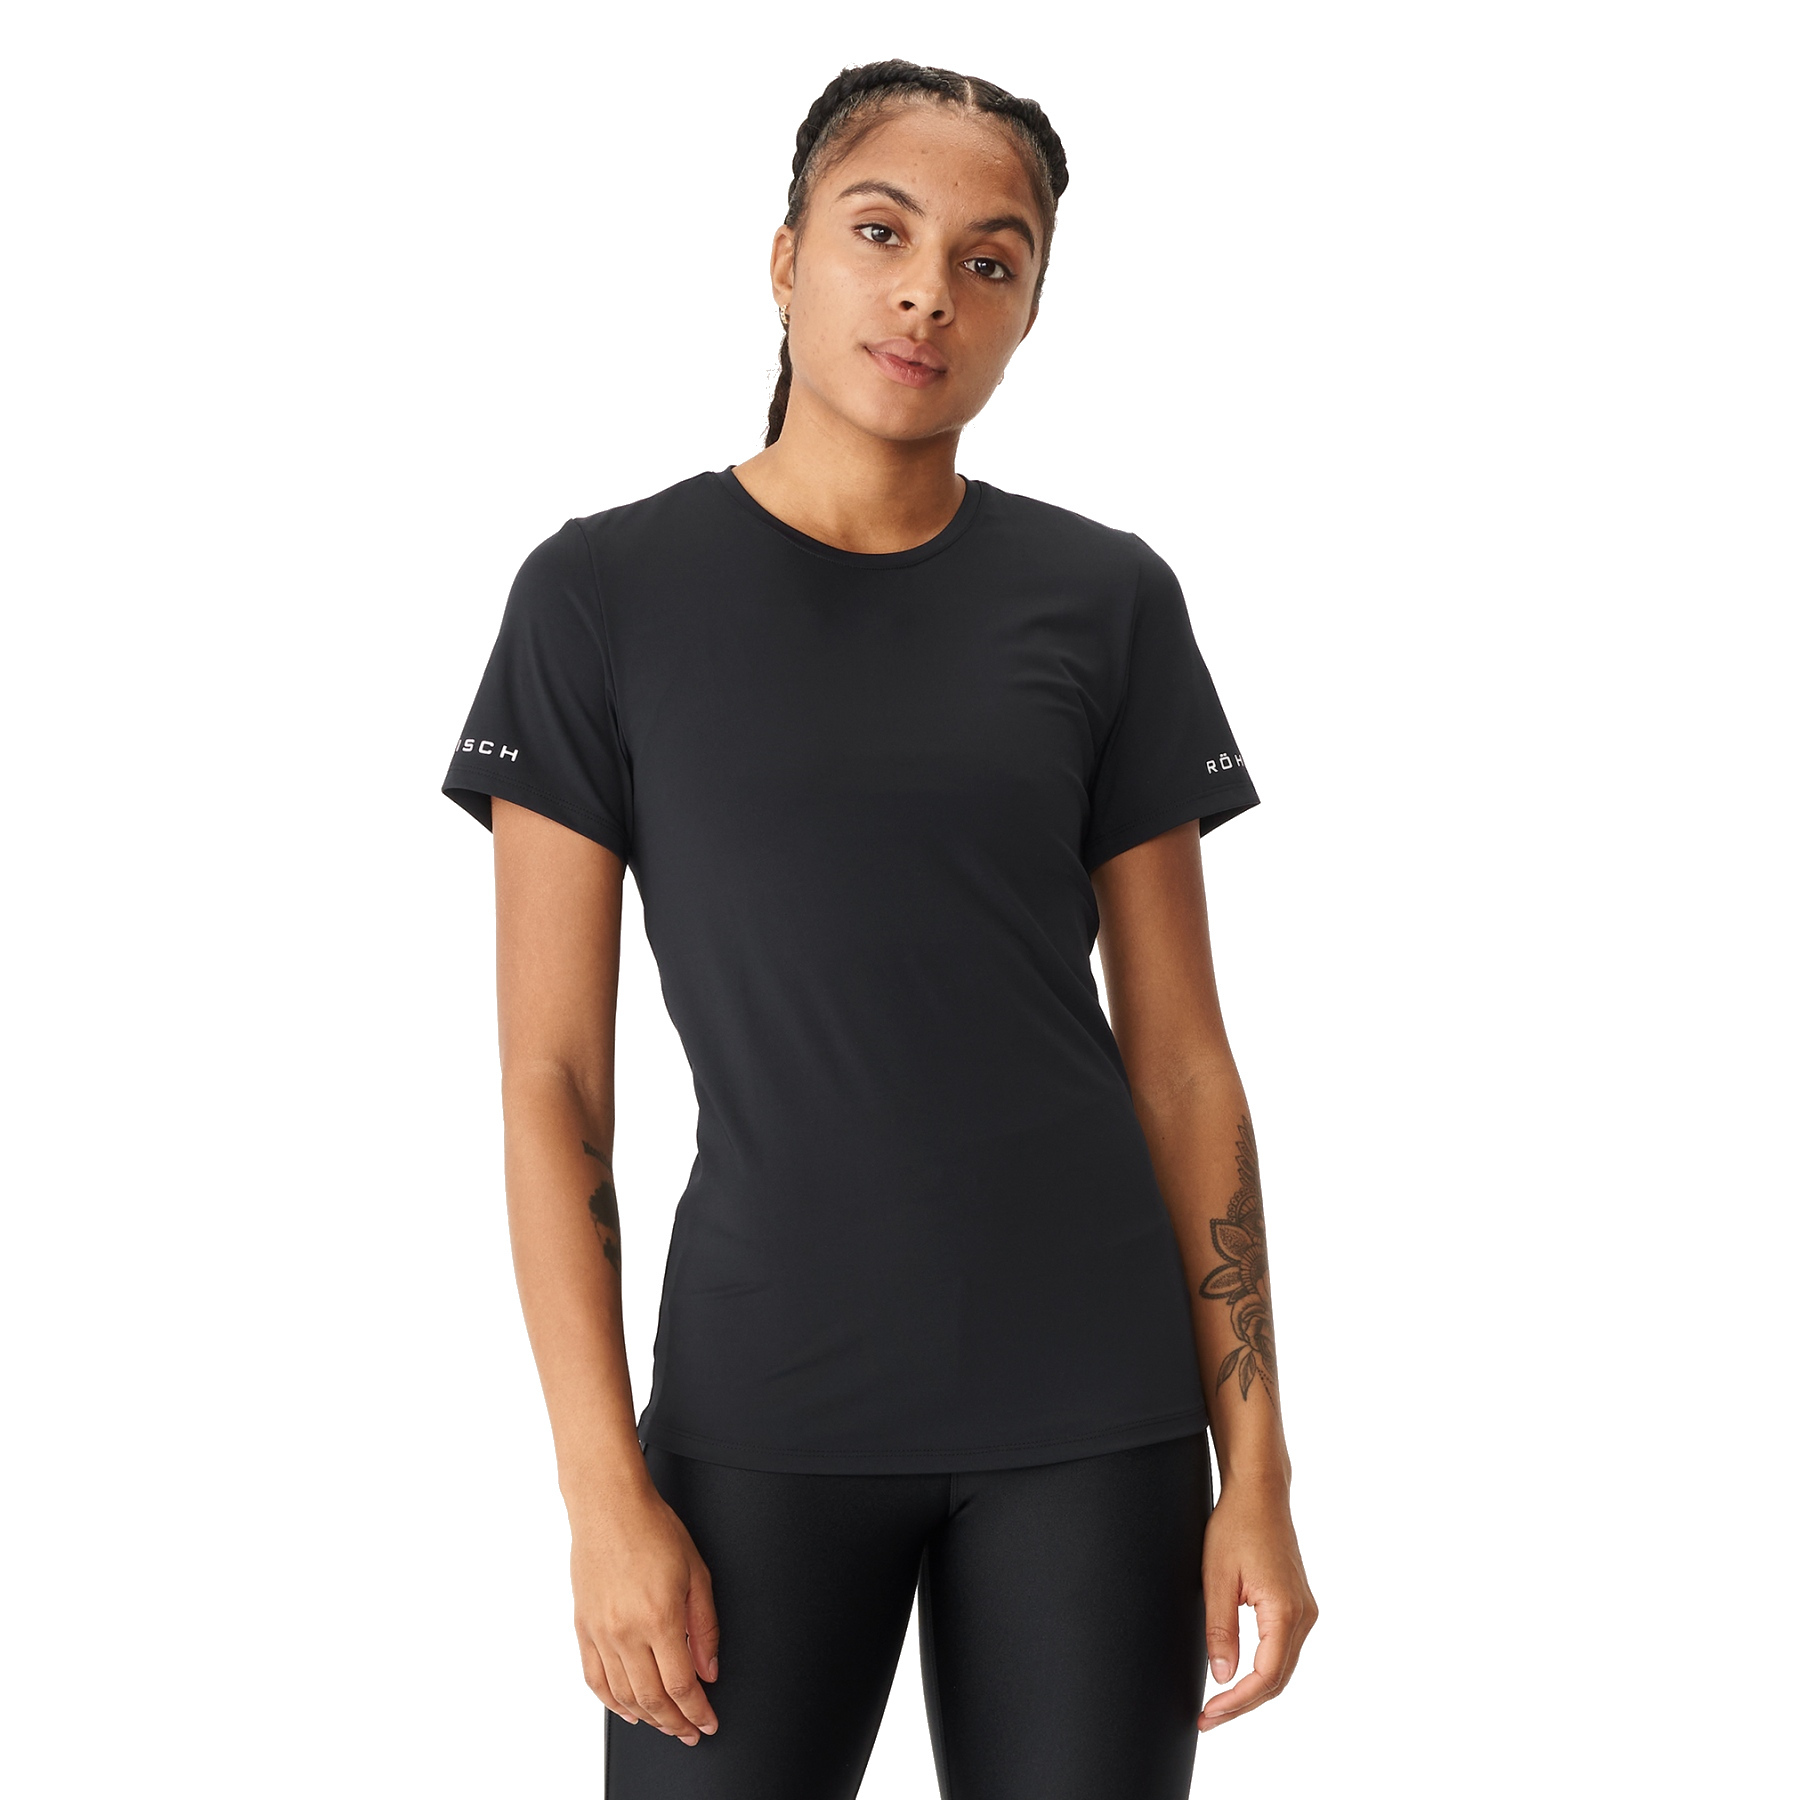 Produktbild von Röhnisch Arc T-Shirt Damen - Schwarz